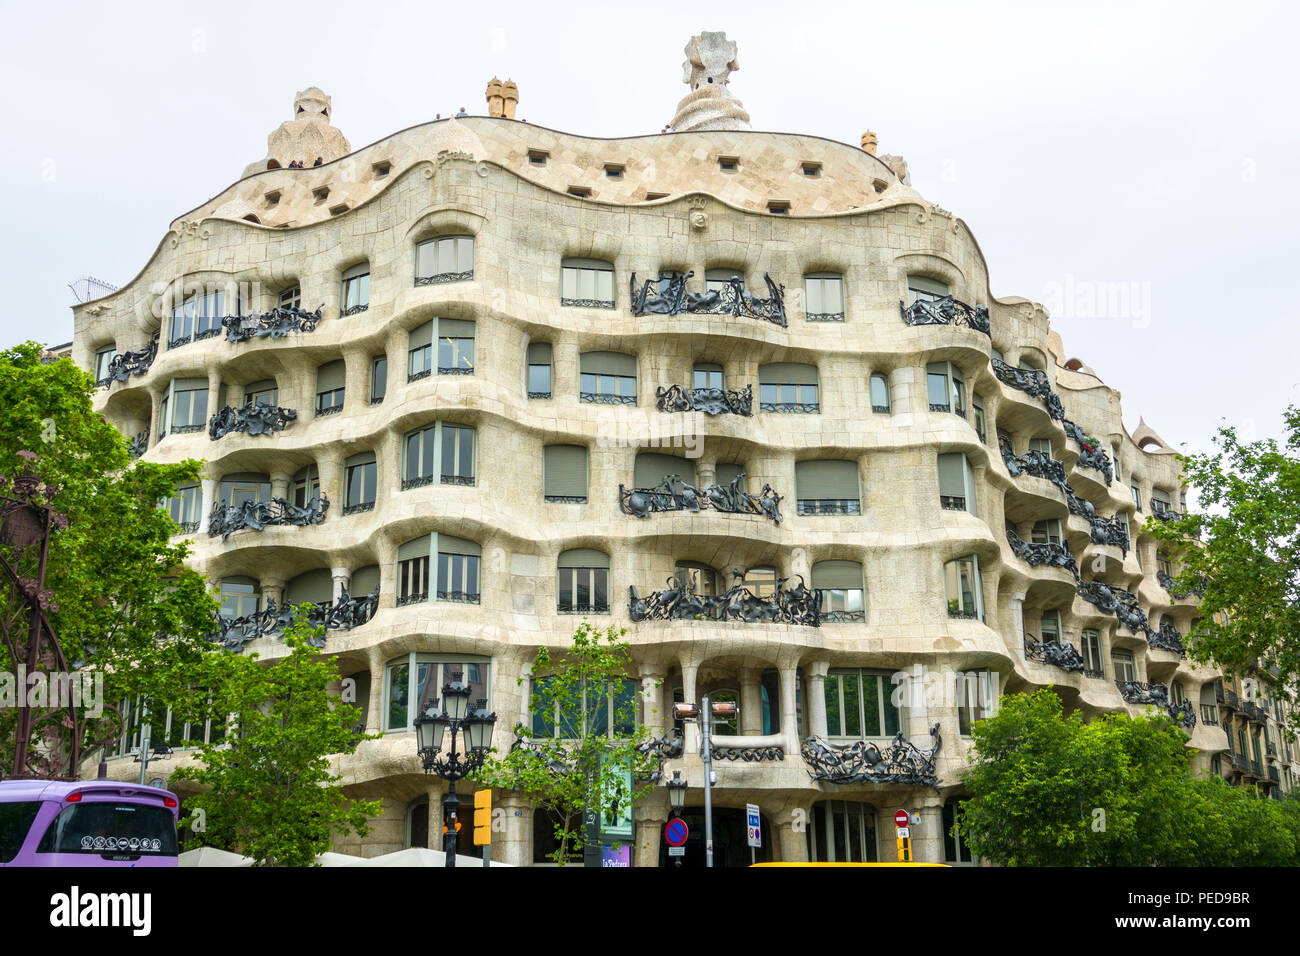 Casa Mila (La Pedrerea) Barcelona Spanien der kosmopolitischen Hauptstadt der spanischen Region Katalonien, ist bekannt für seine Kunst und Architektur bekannt. Die phantastische S Stockfoto